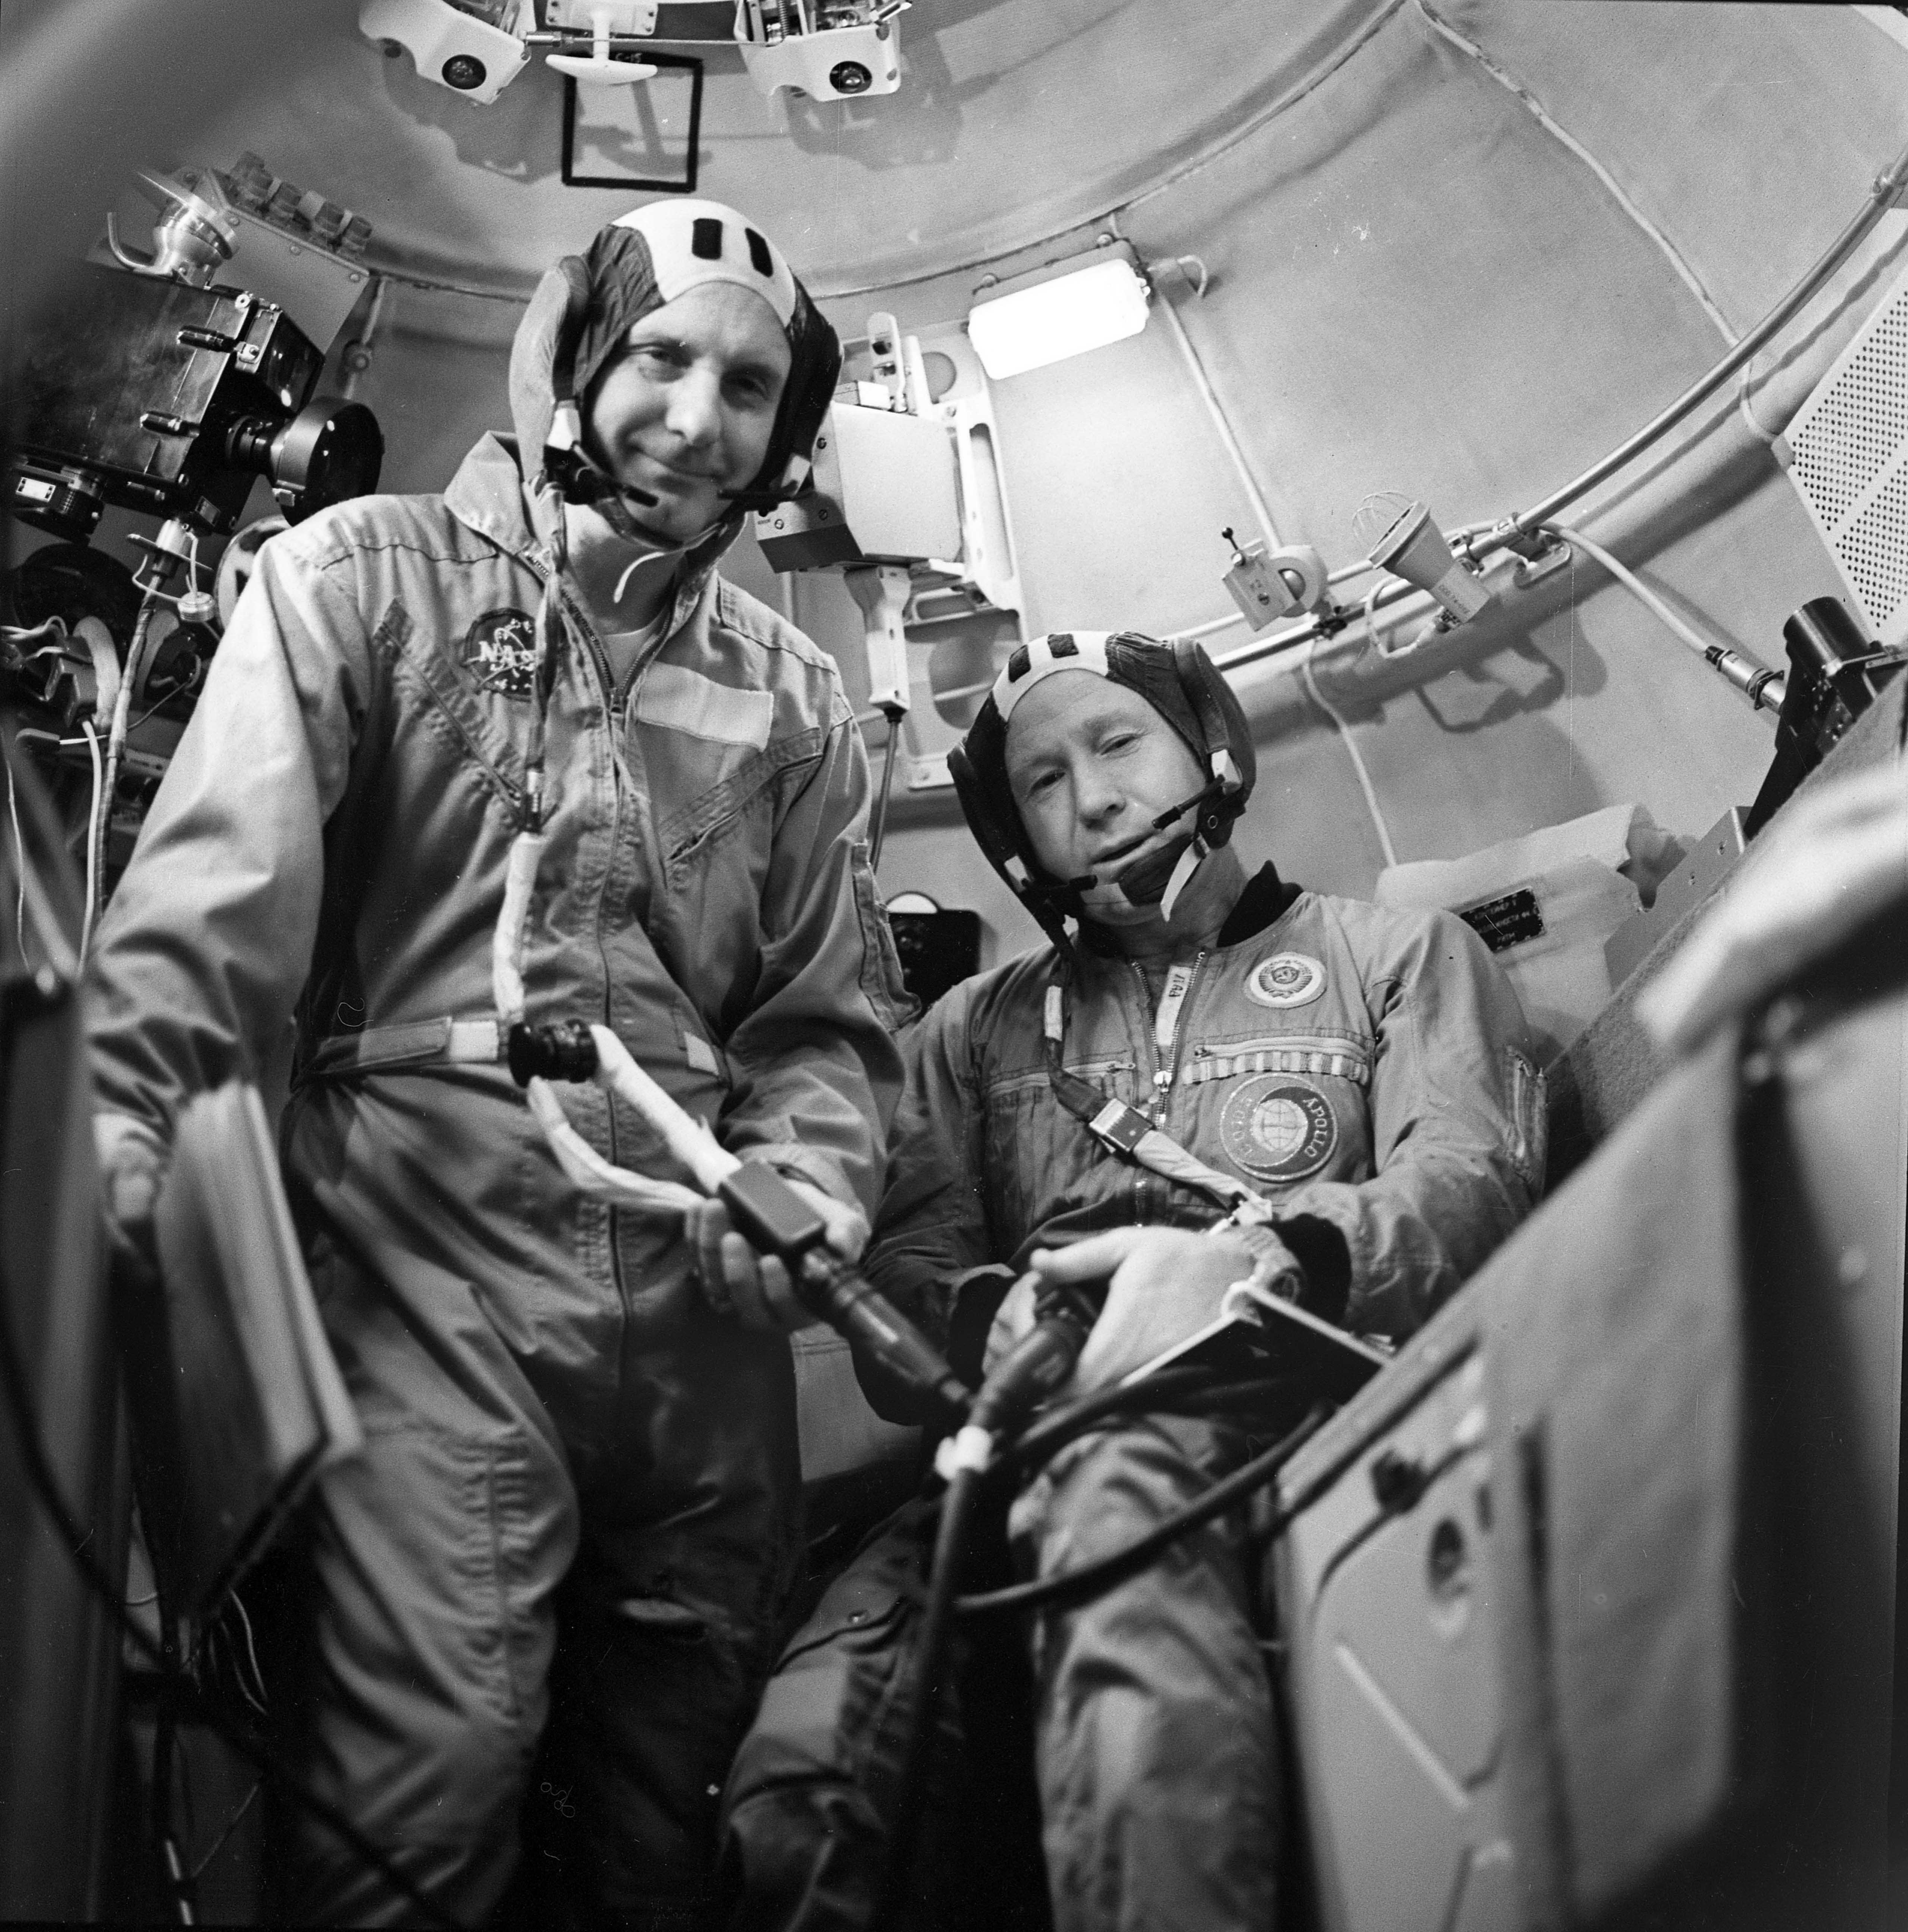 Космонавт полетевший в космос вторым. Леонов и Беляев космонавты. 1965 Полет Леонова и Беляева.